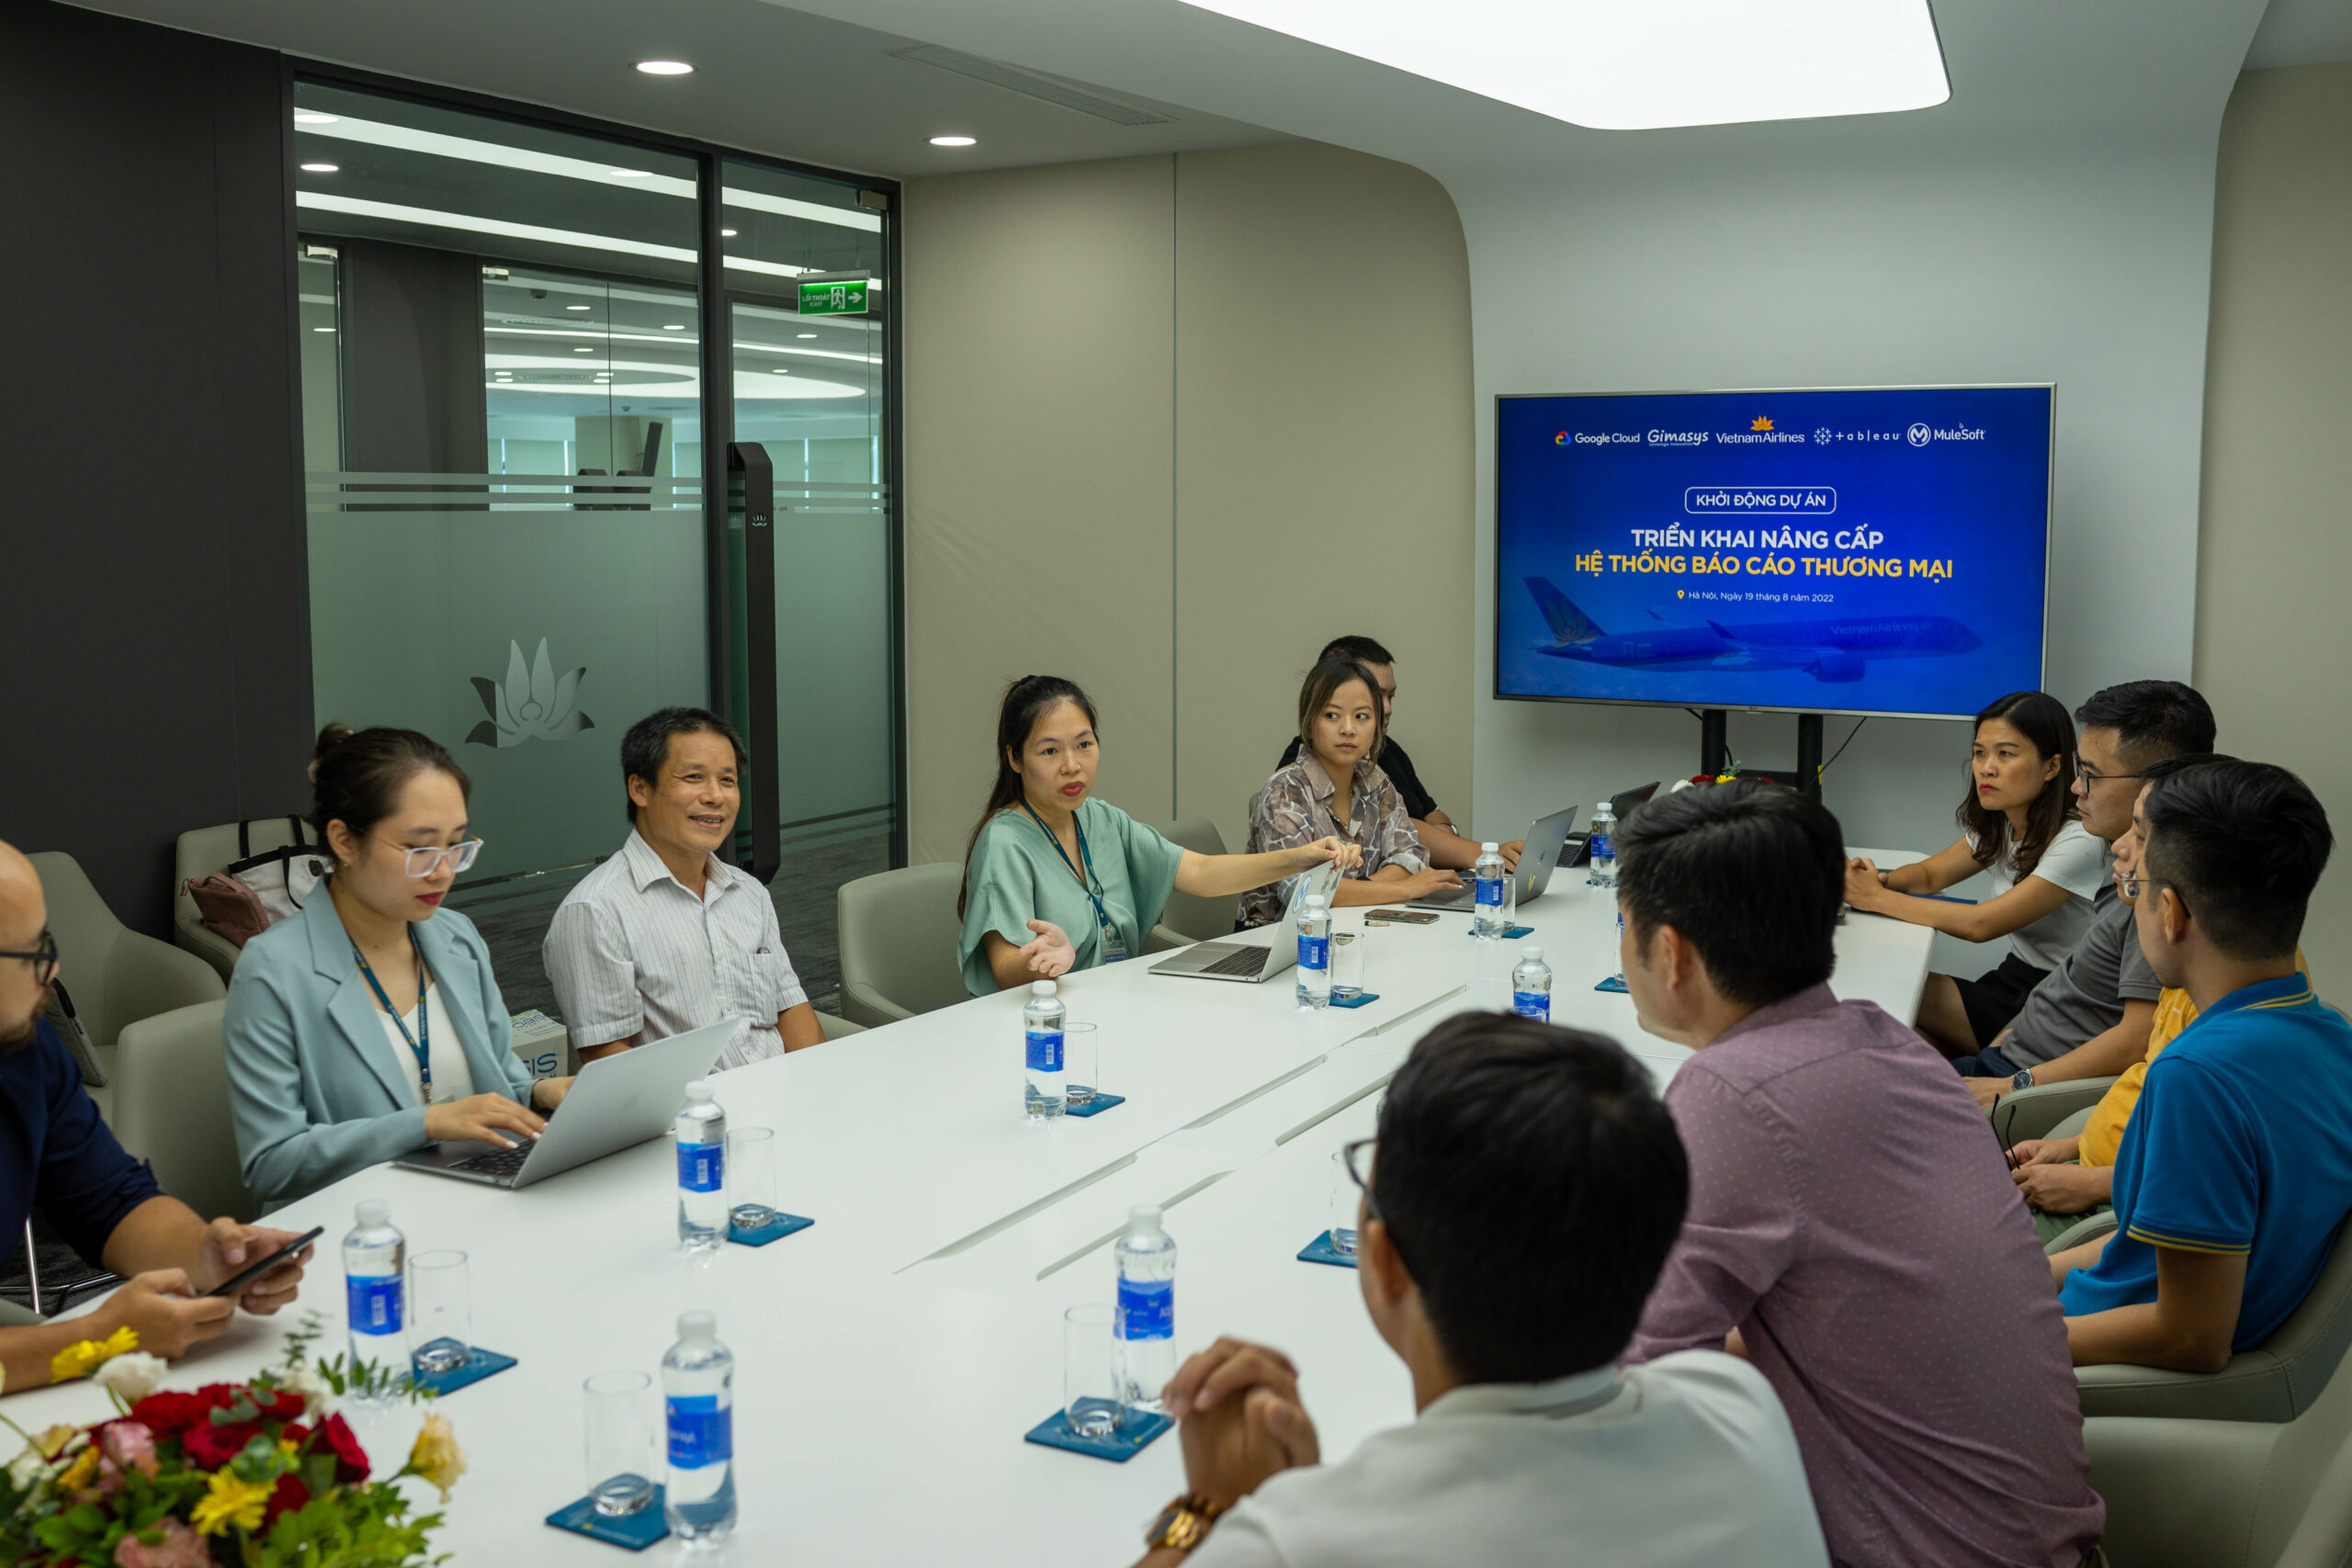 Gimasys chính thức go-live dự án nâng cấp hệ thống báo cáo thương mại cho TCT Hàng không Việt Nam